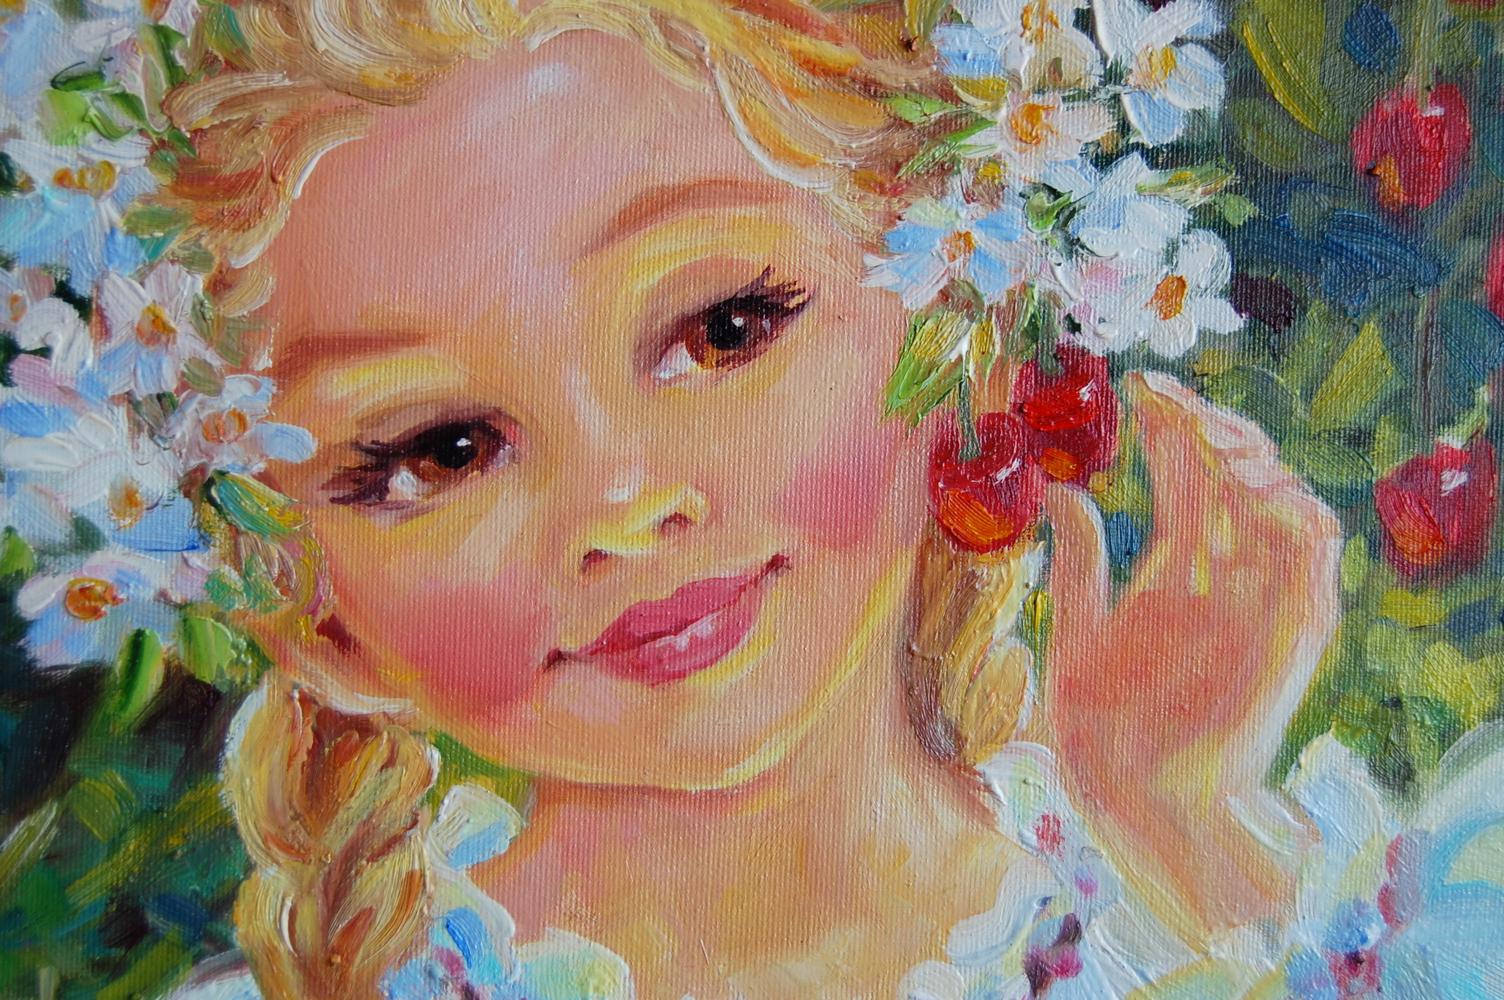 Olga Artim's oil painting "Cherry Dumplings"